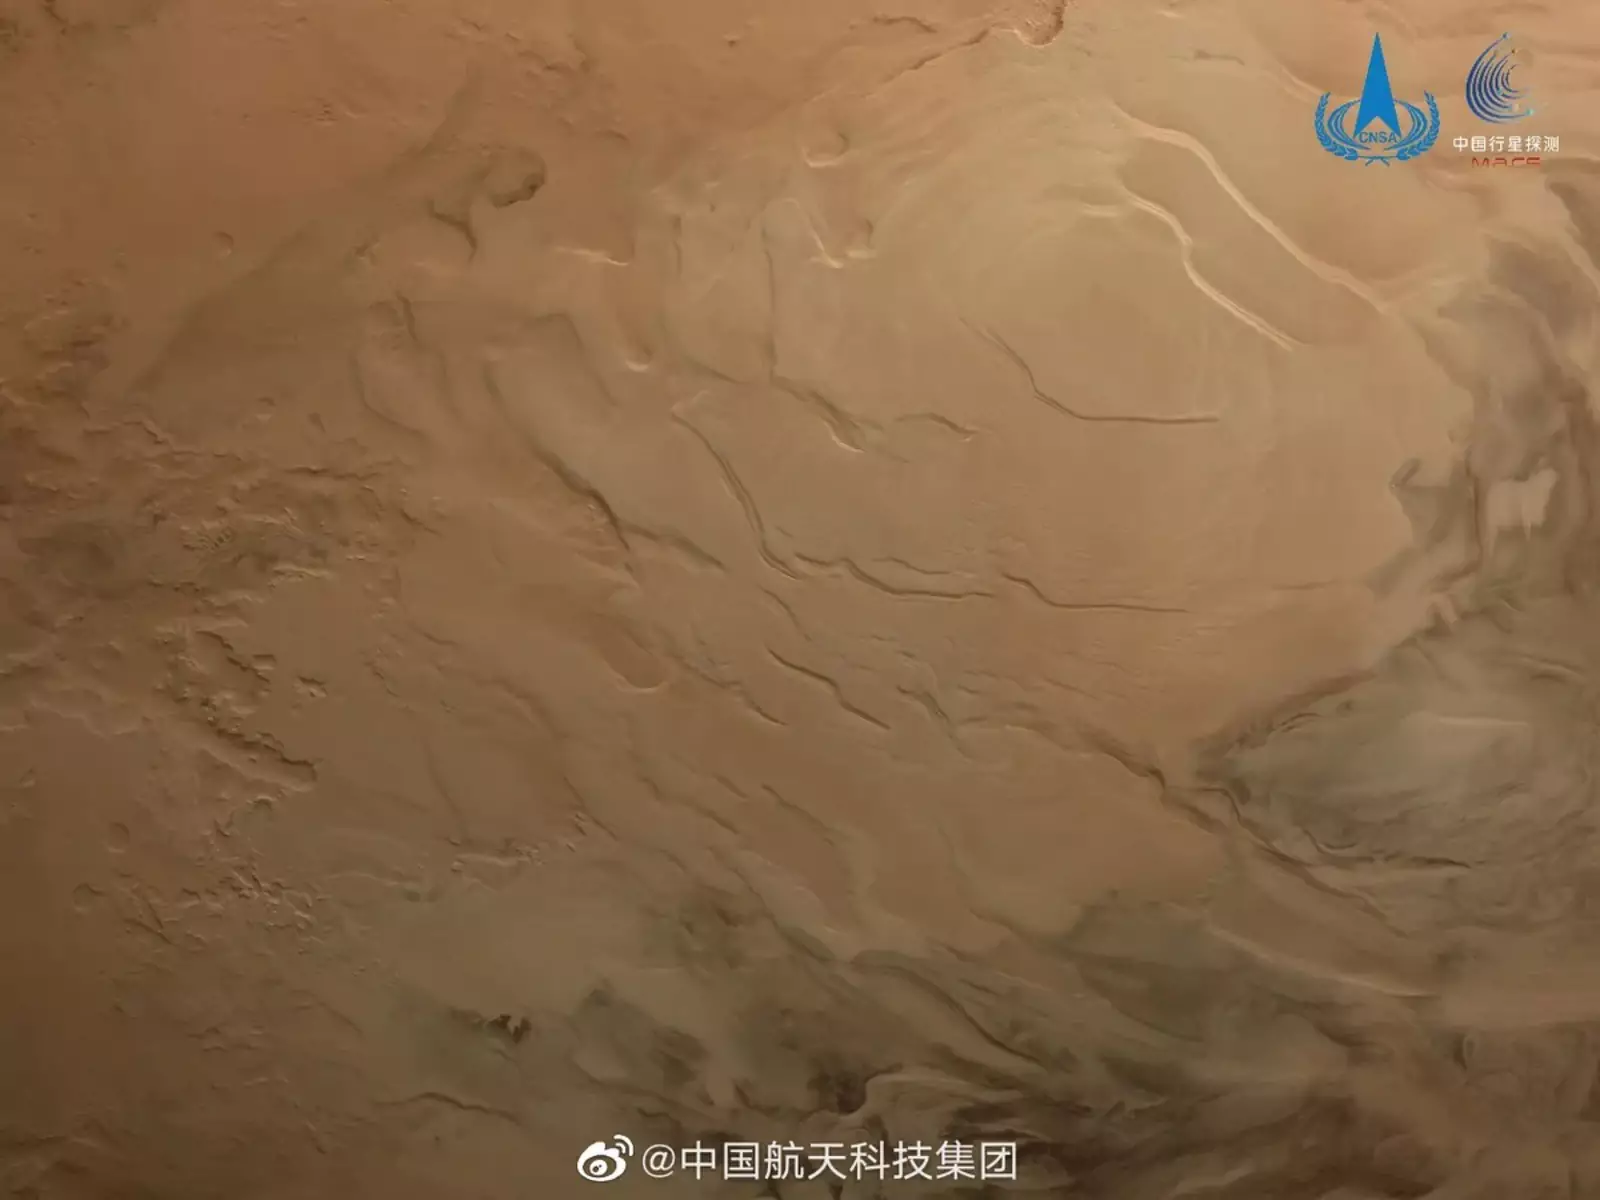 Marsın cənub qütbünün altında buzaltı göl var.